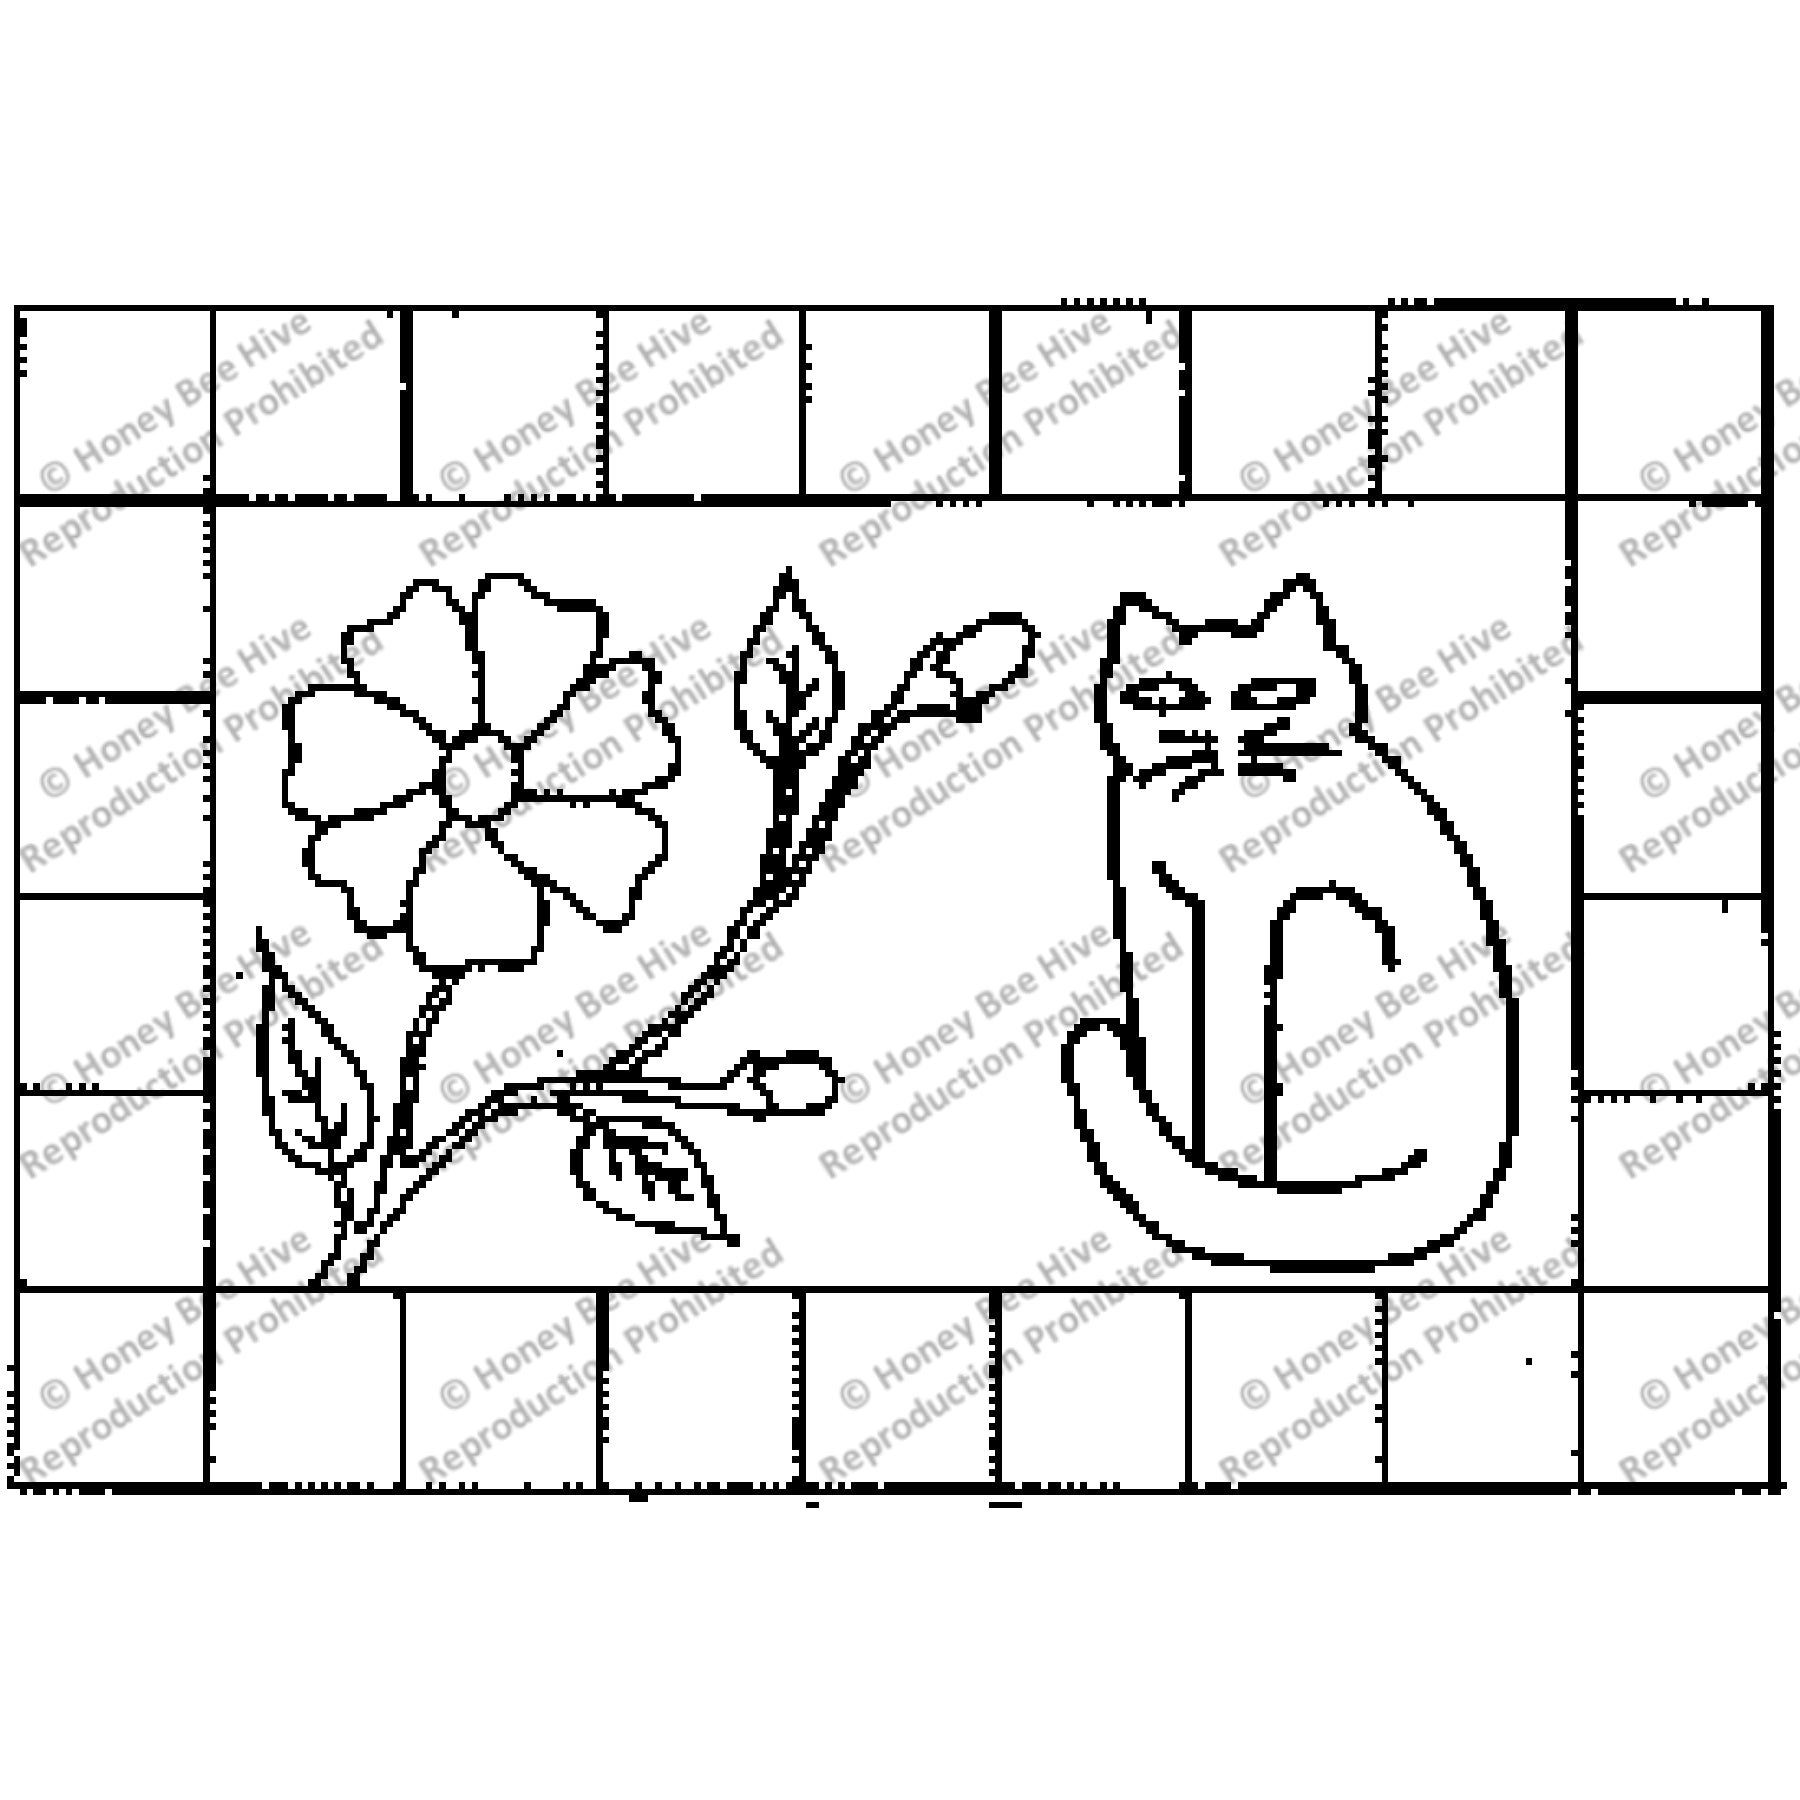 Padula Cat, rug hooking pattern